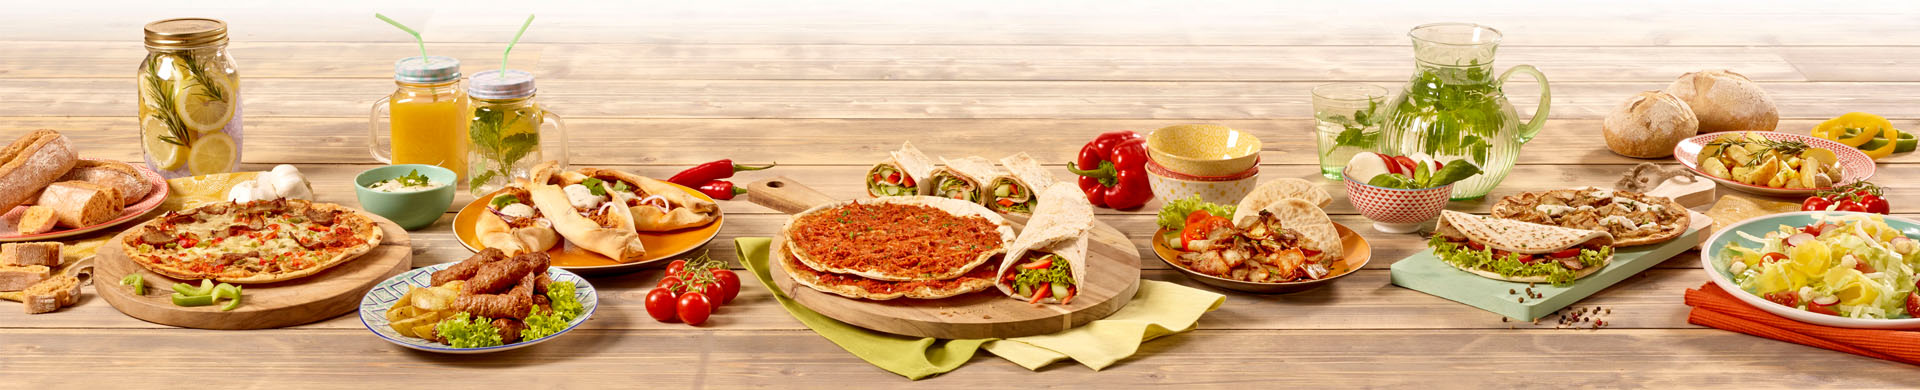 Lekker&Anders verwelkomt vegetarische variant op de Turkse pizza